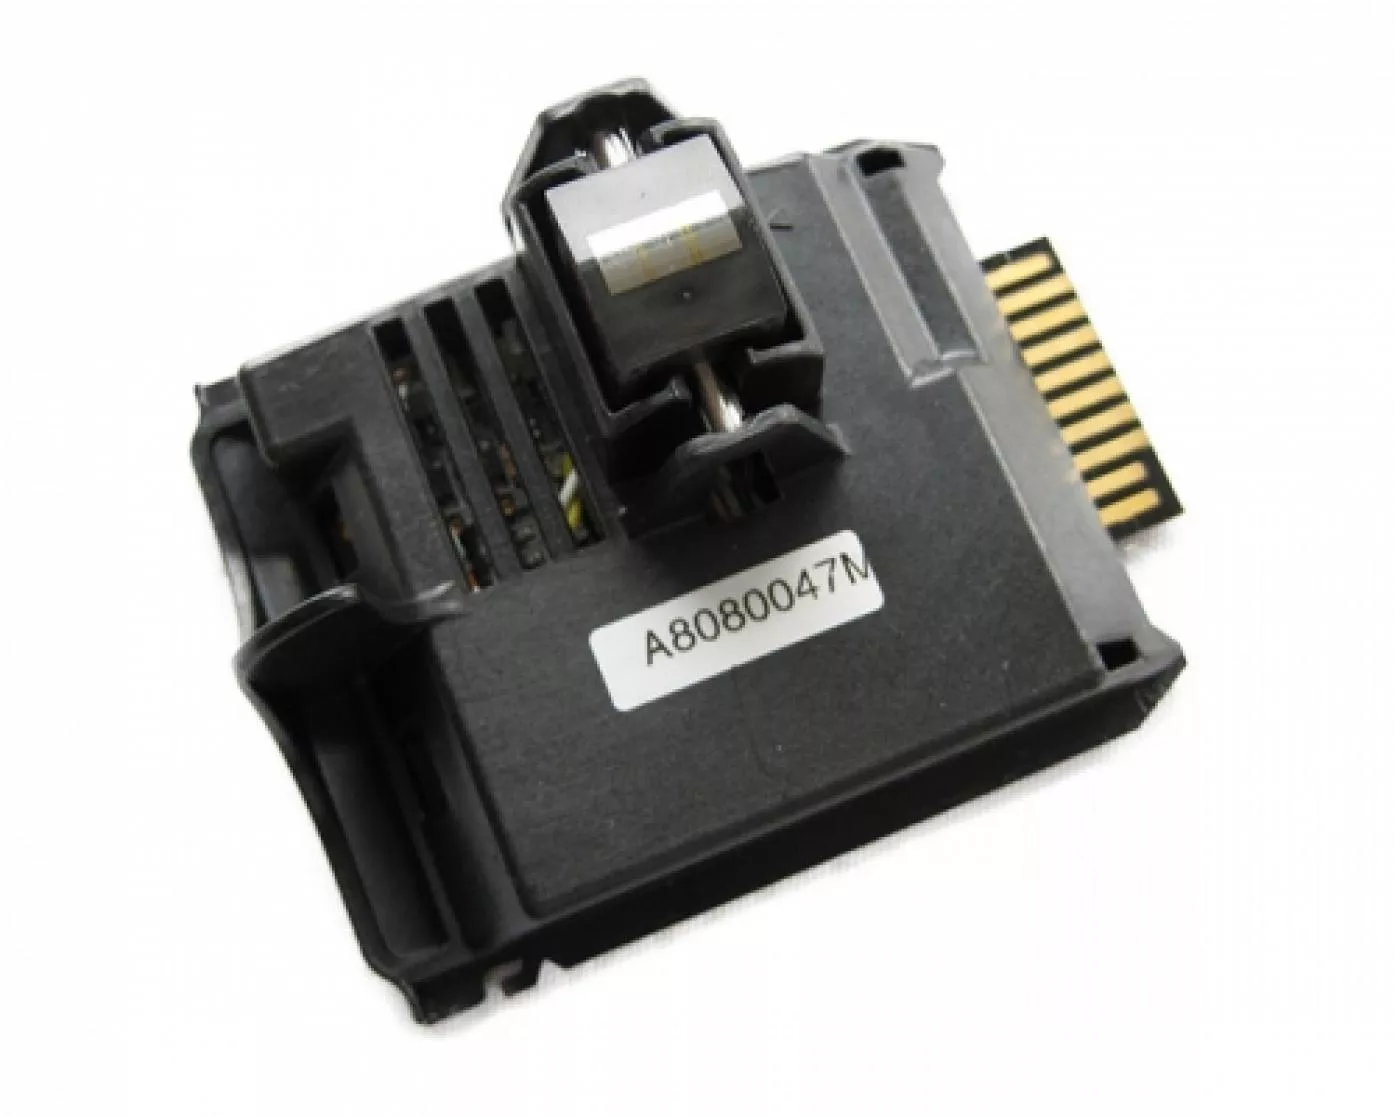 Magnetstreifen Codierer für Kartendrucker HID Fargo HDP5000